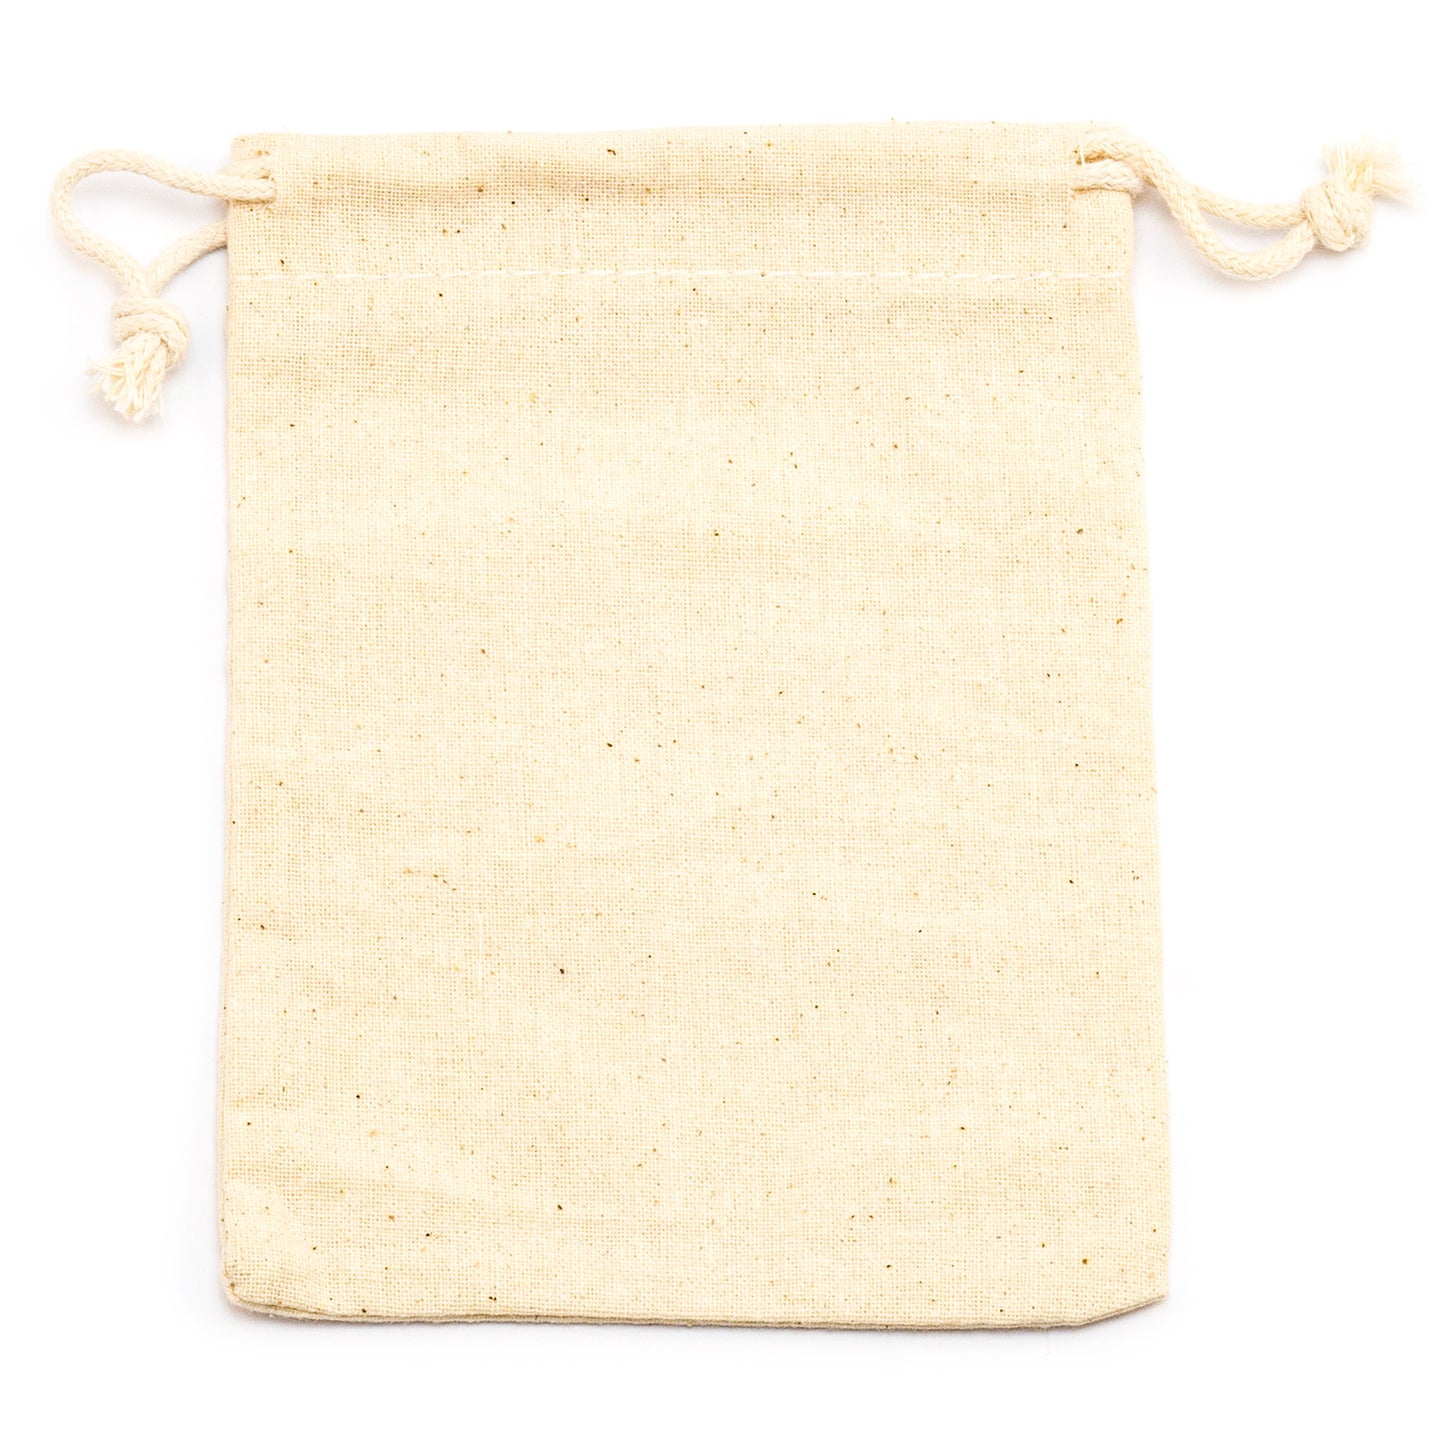 Cloth bag (14 x 10 cm)